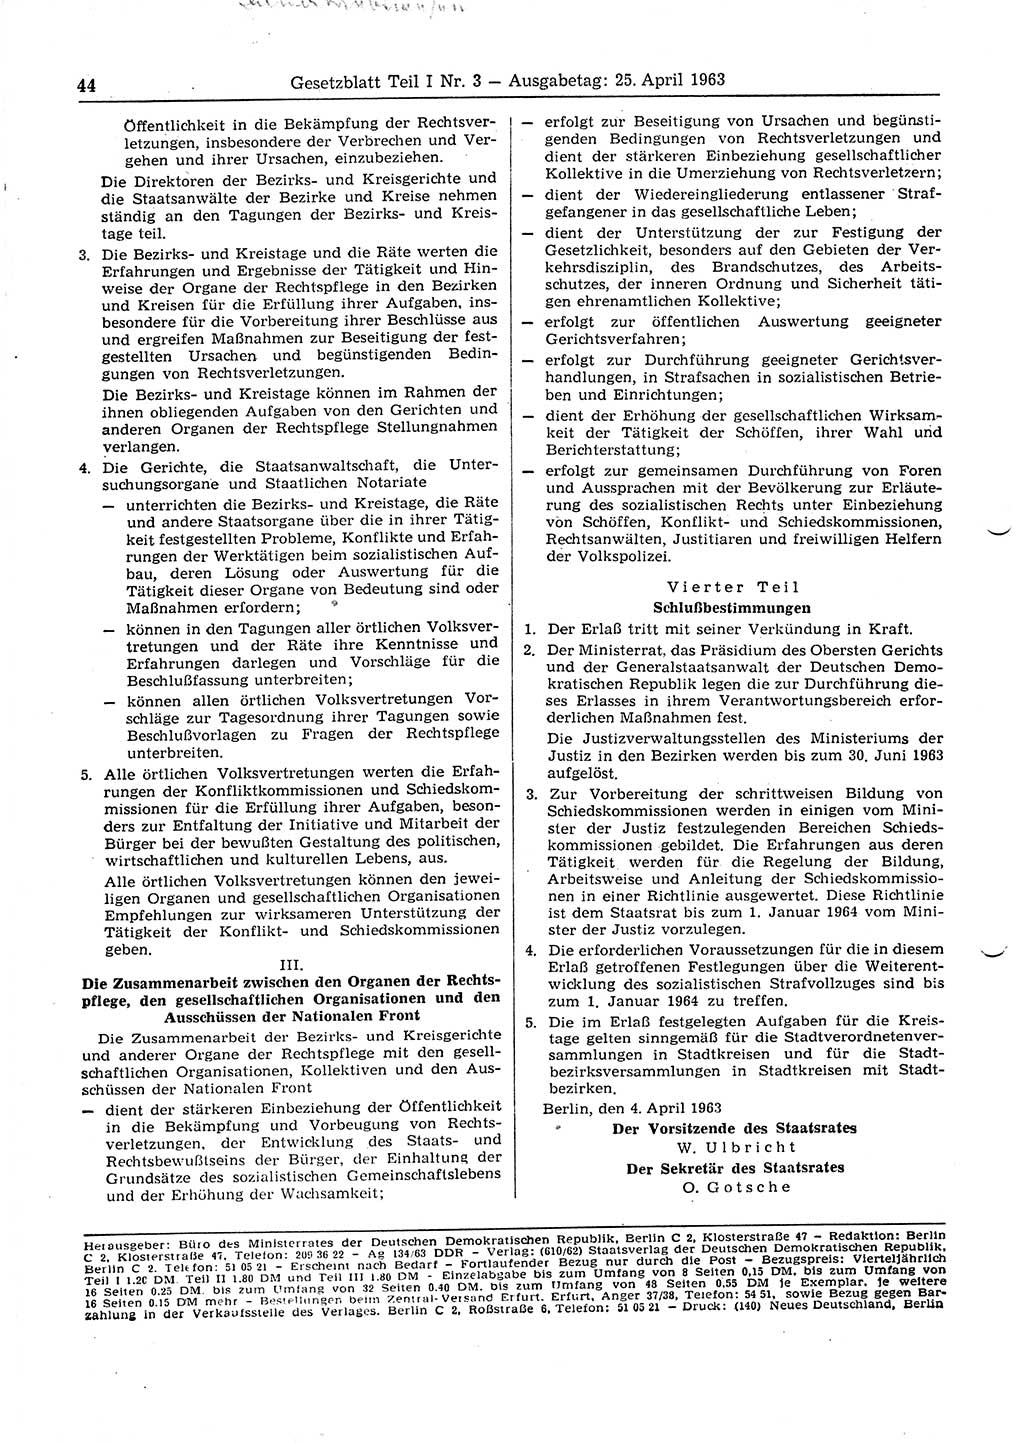 Gesetzblatt (GBl.) der Deutschen Demokratischen Republik (DDR) Teil Ⅰ 1963, Seite 44 (GBl. DDR Ⅰ 1963, S. 44)